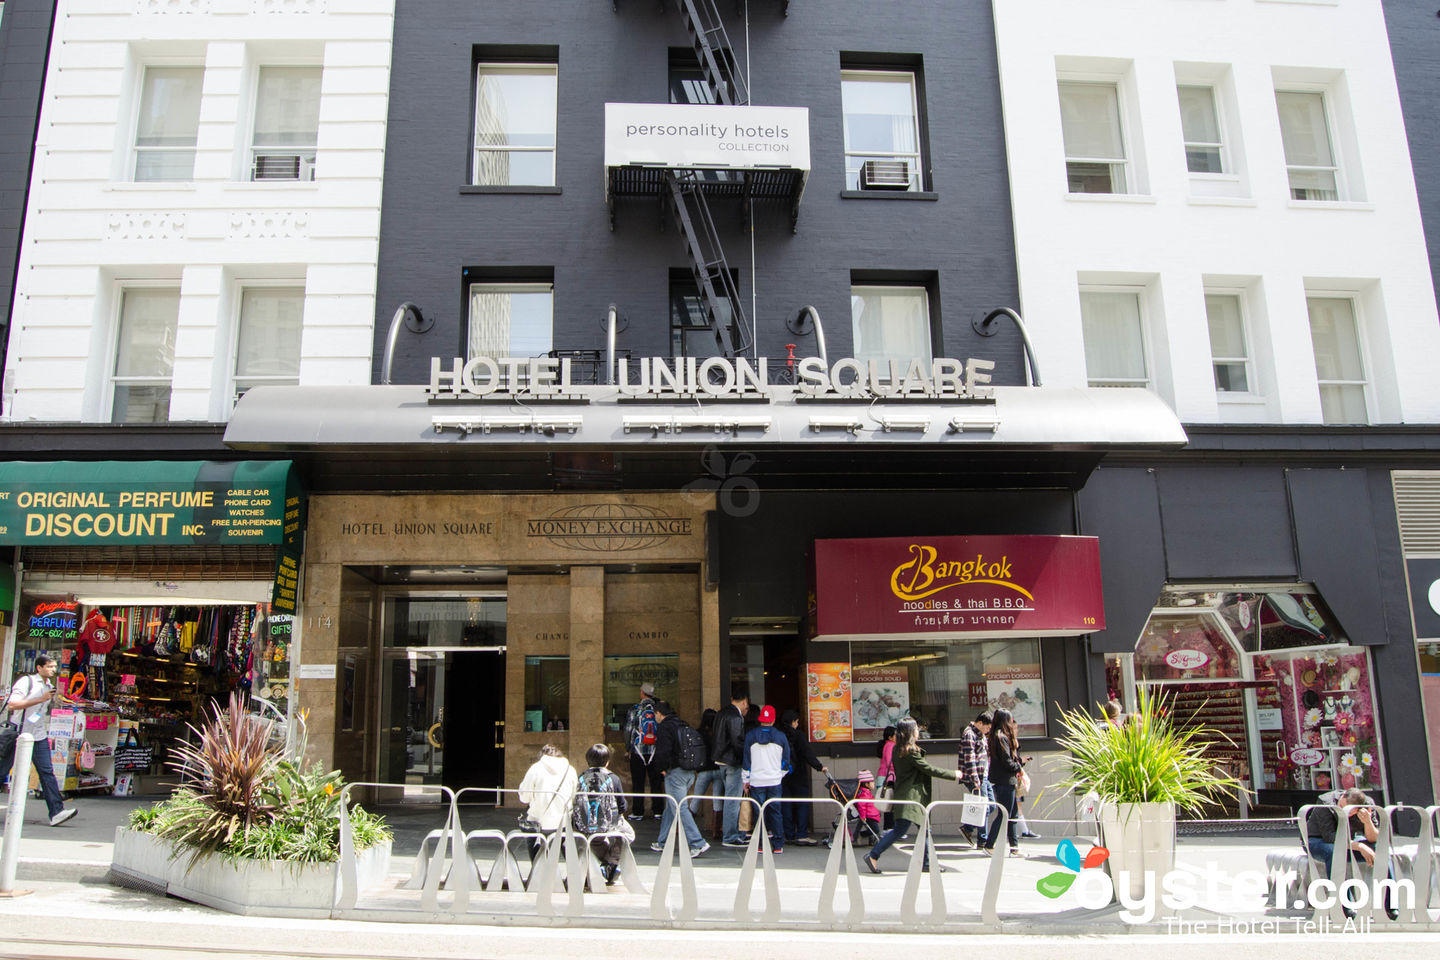 Hotel Union Square - Wikipedia